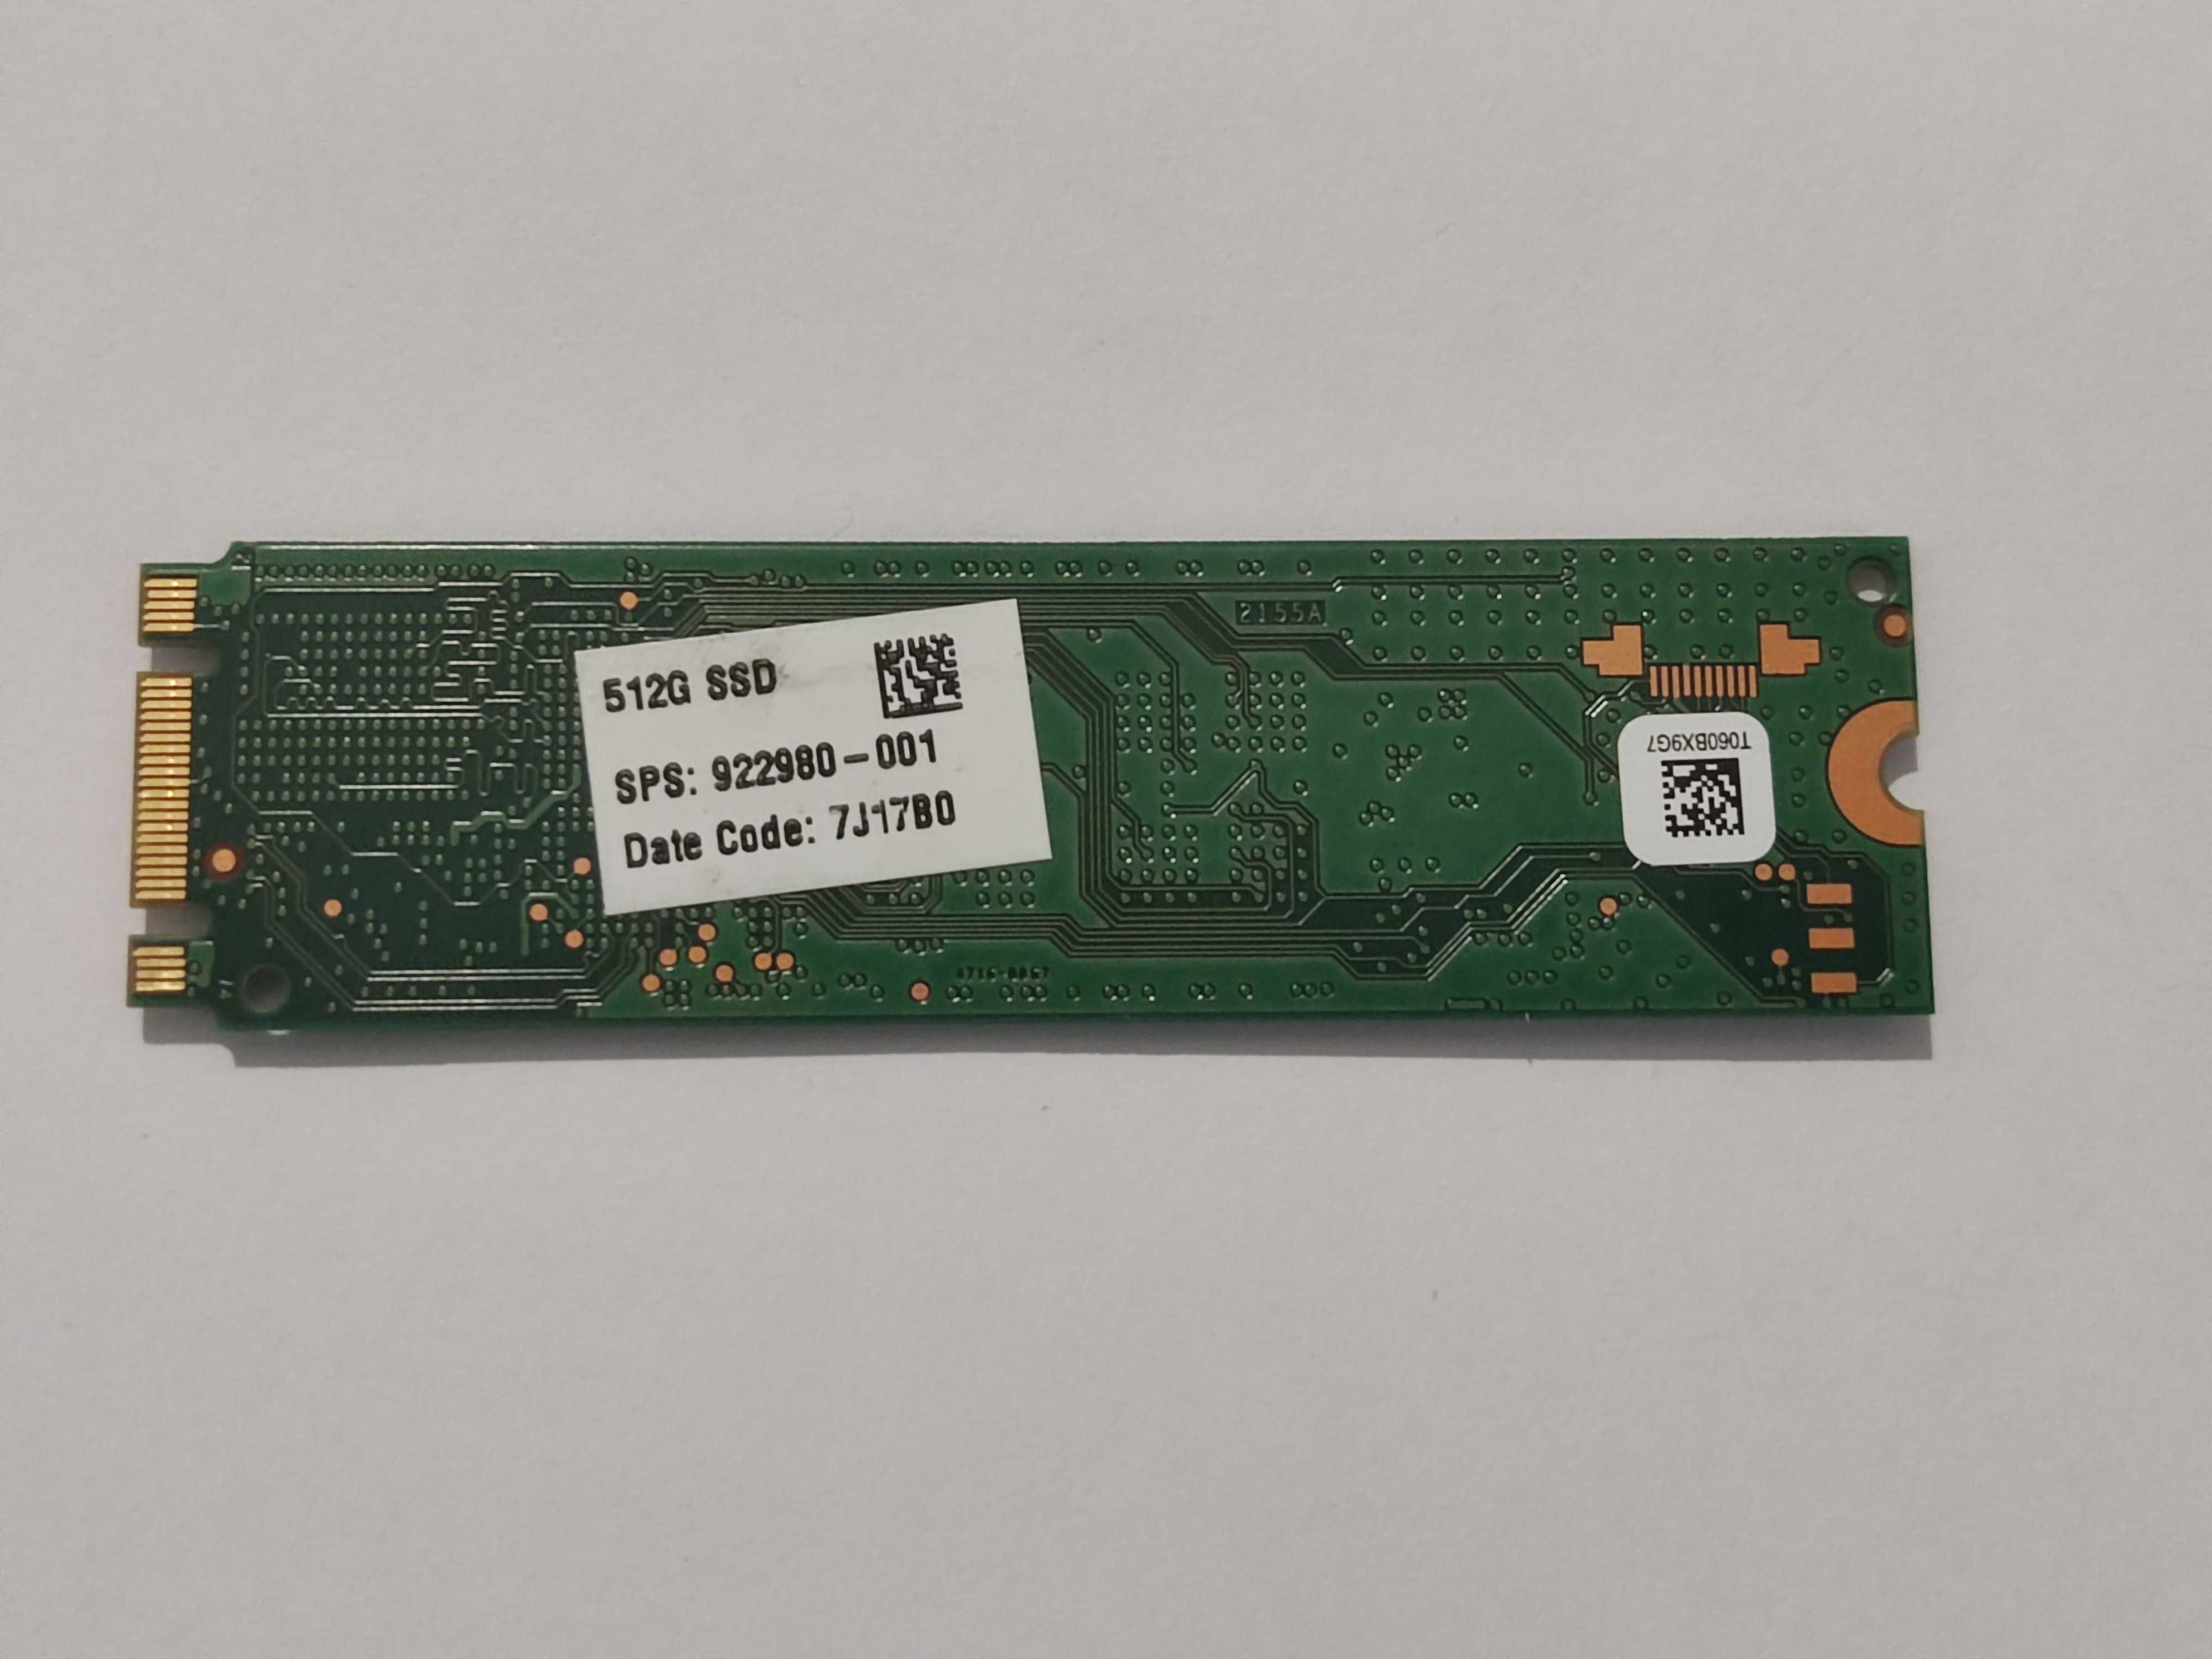 Dysk SSD Samsung PM871, M2 SATA3 512GB - 2280